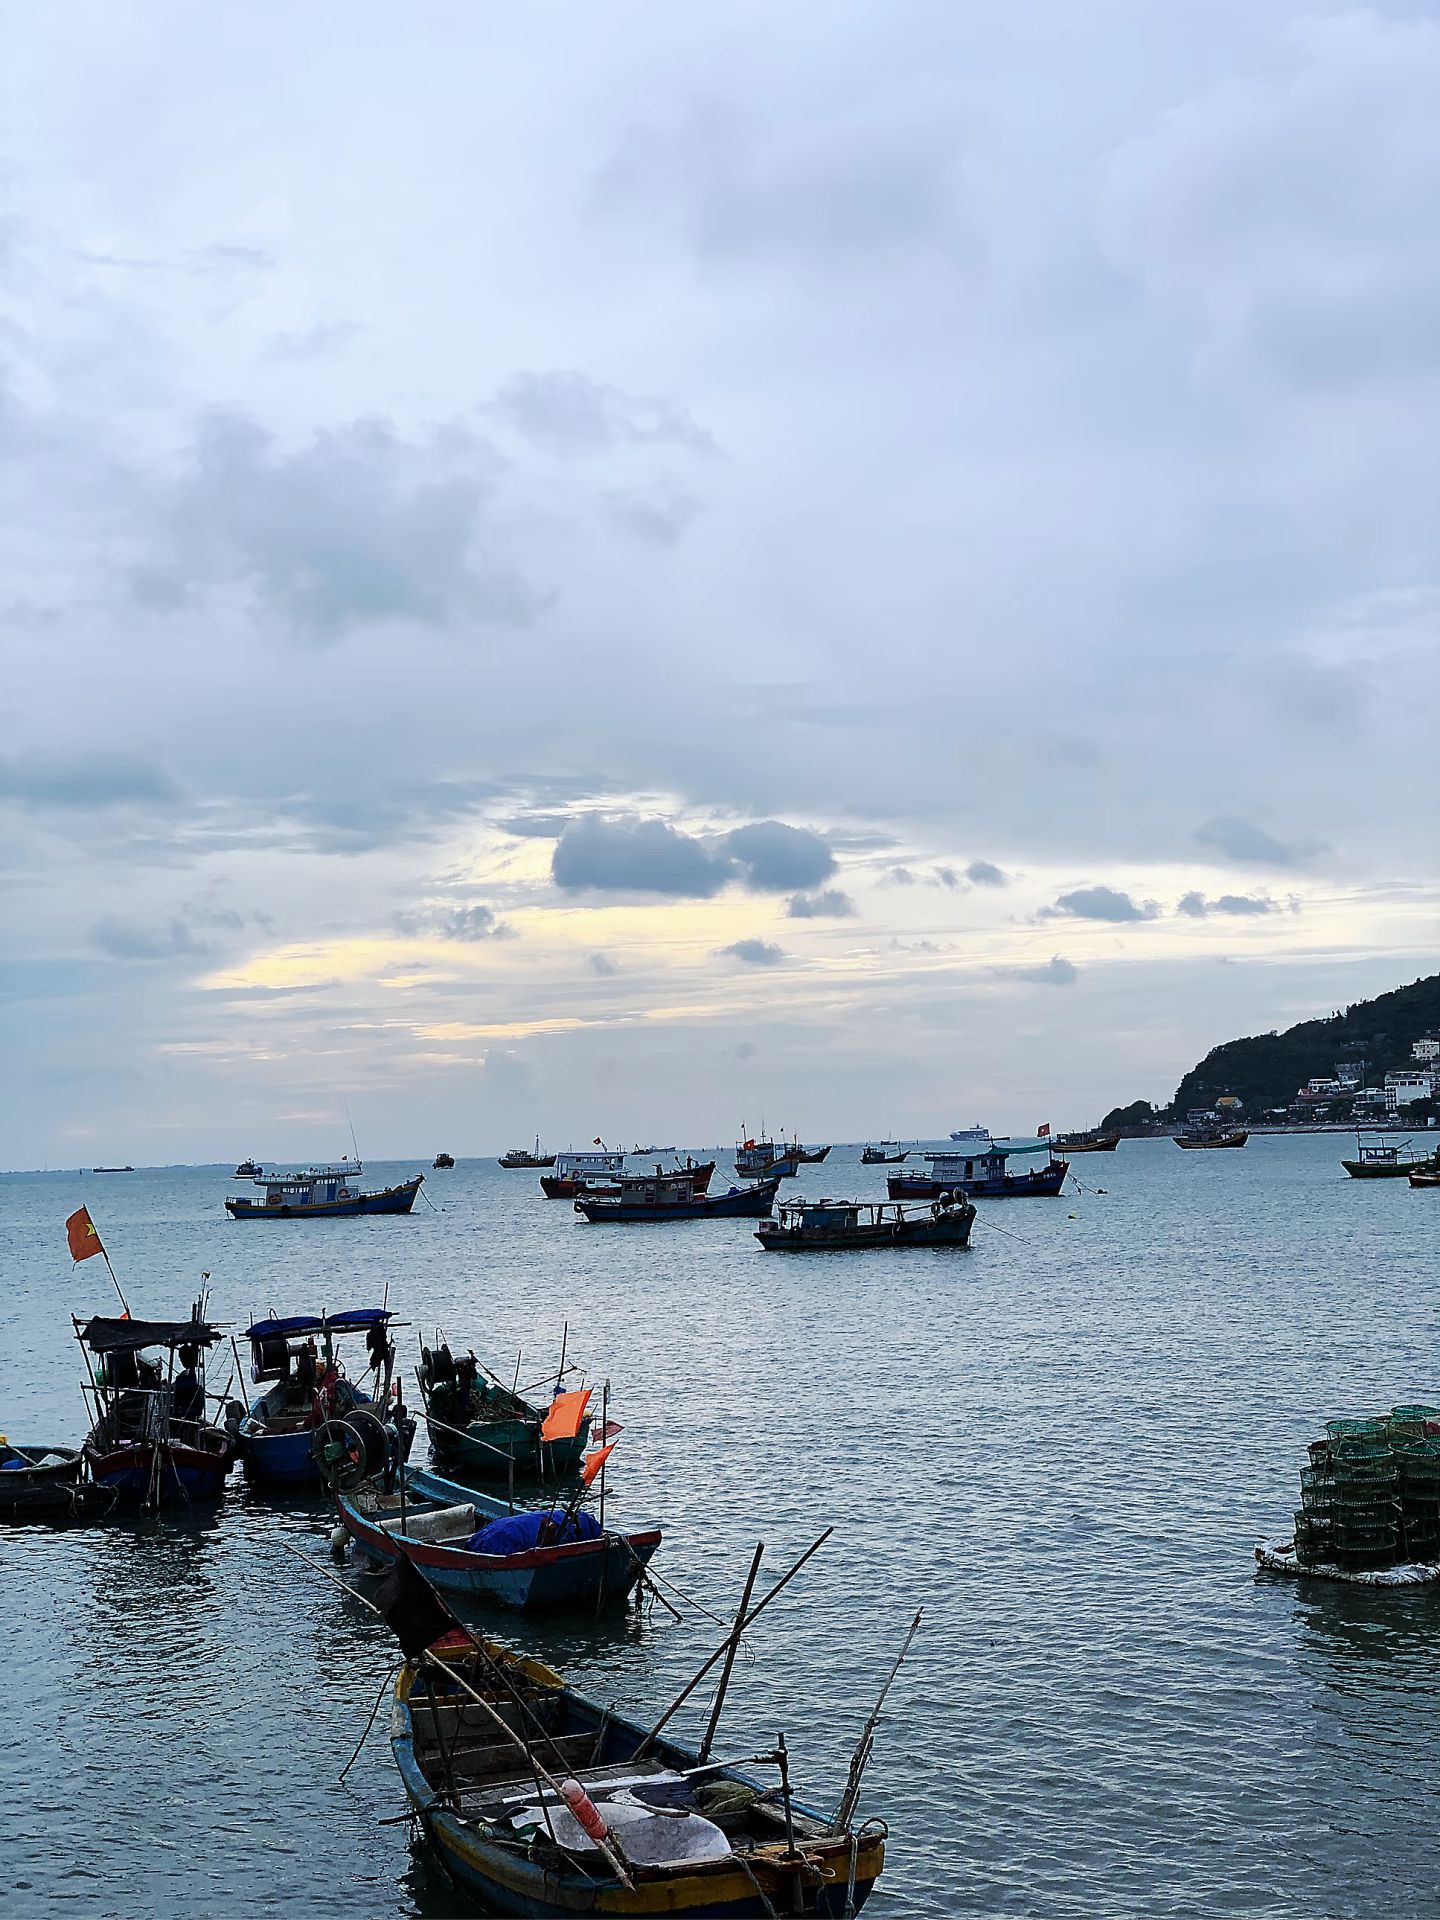 Việt Nam sở hữu 2 trong số 5 bãi biển đẹp nhất thế giới, thu hút triệu lượt xem trên TikTok  - Ảnh 4.